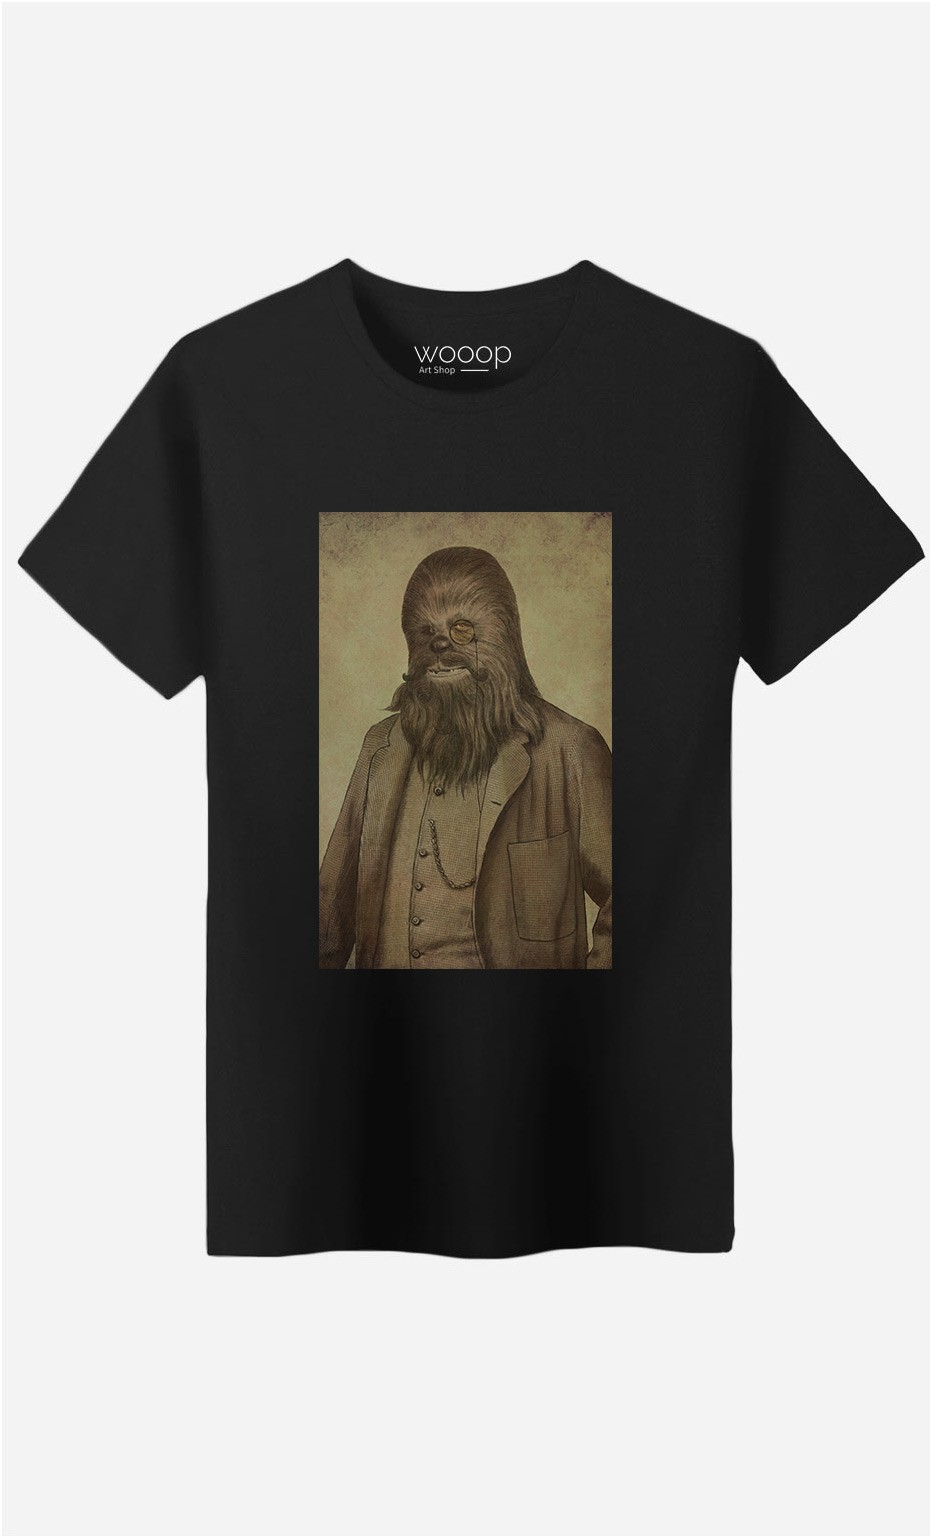 T-Shirt Chancellor Chewie